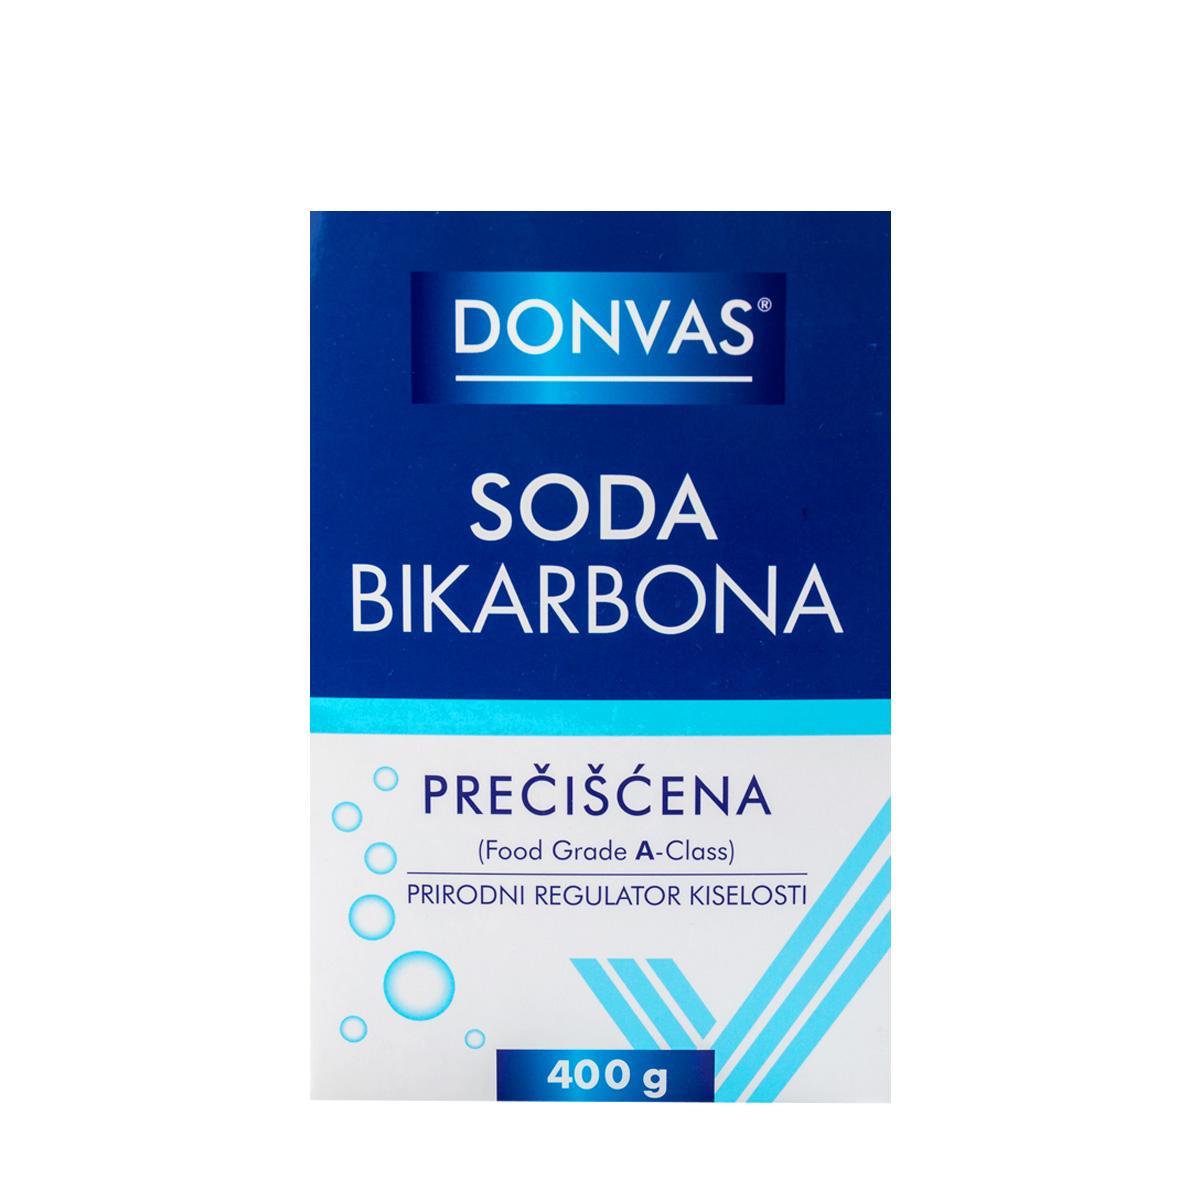 Selected image for DONVAS Soda bikarbona prečišćena 400g